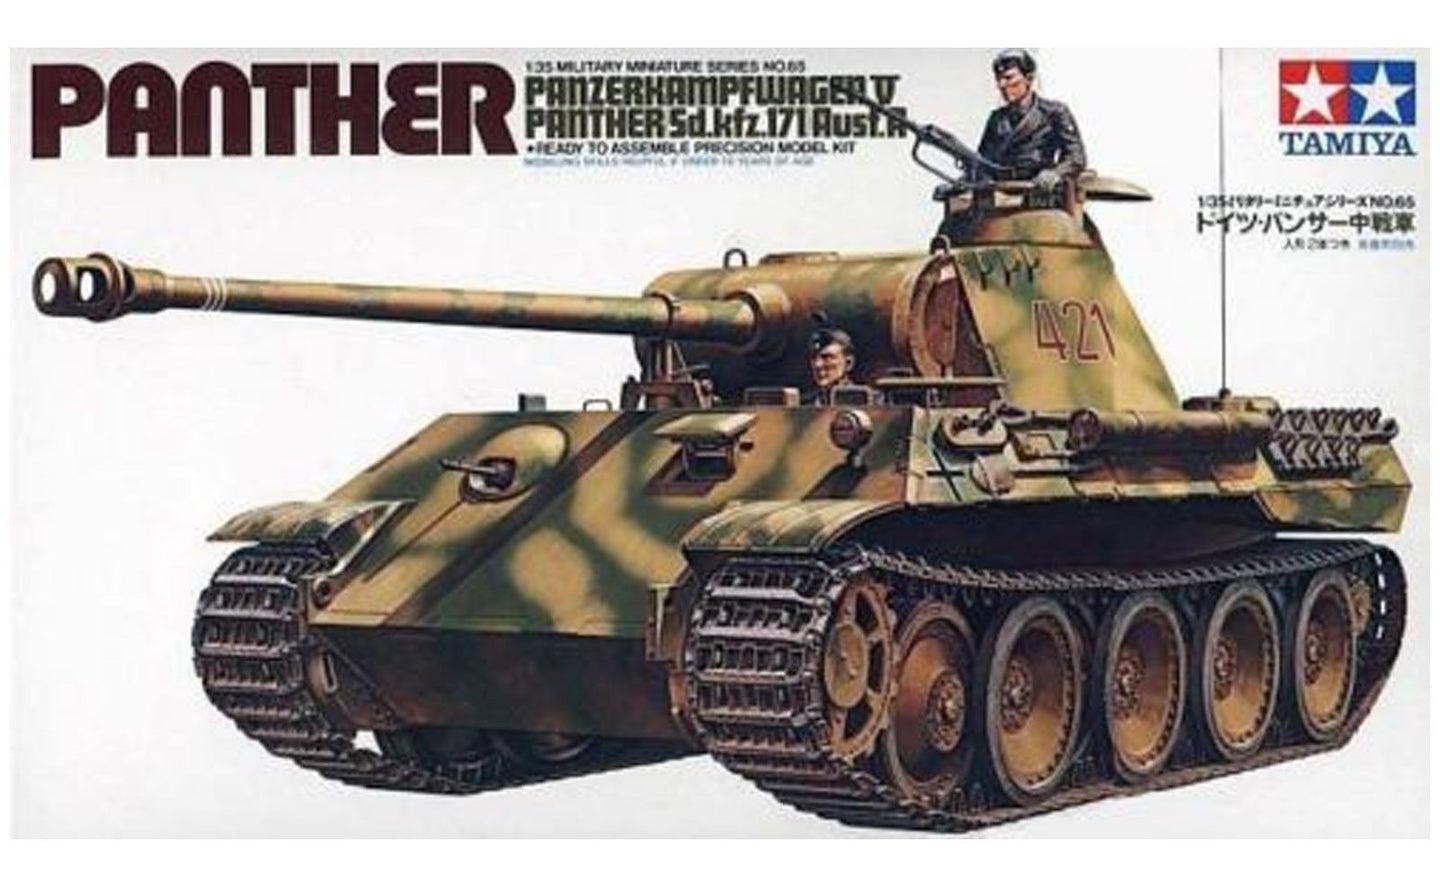 Tamiya 1/35 German Panther Ausf.A 35065